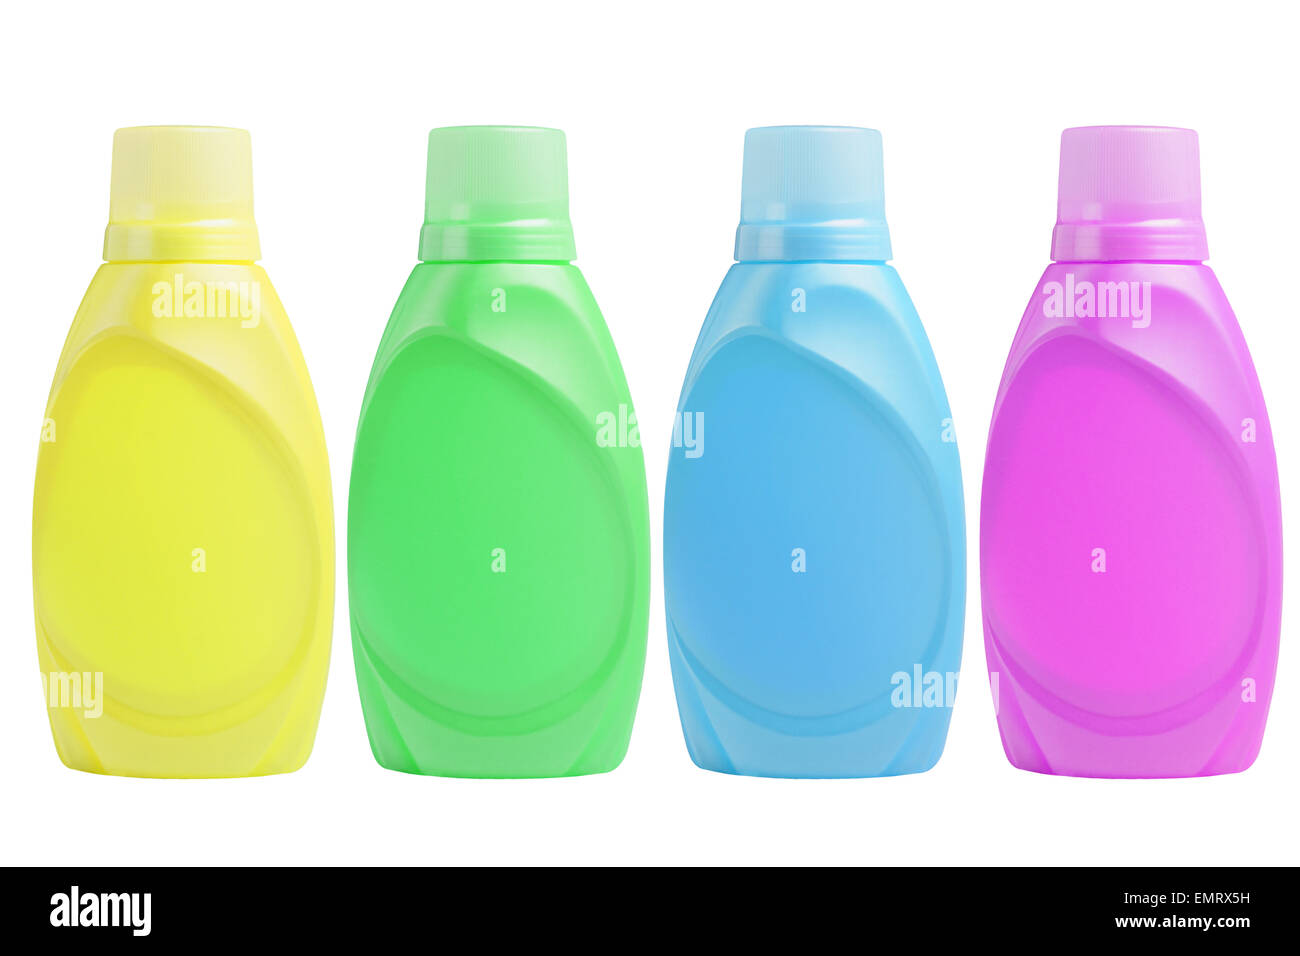 Plastic Shampoo Bottles on White Background Stock Photo